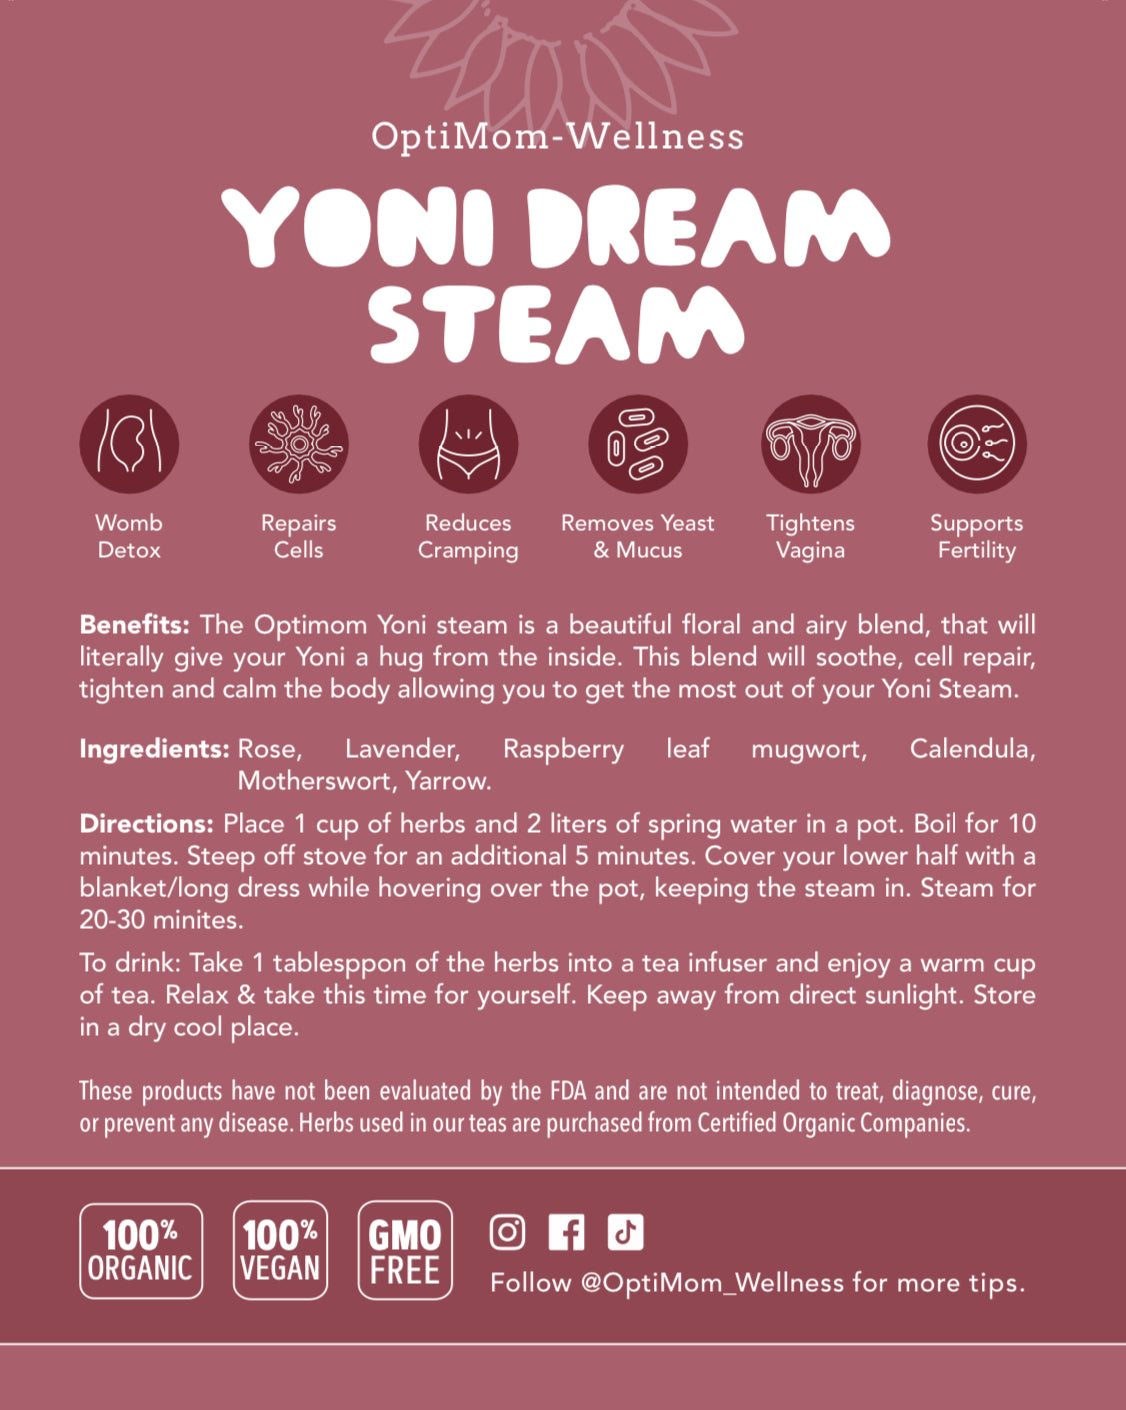 Yoni Dream Steam